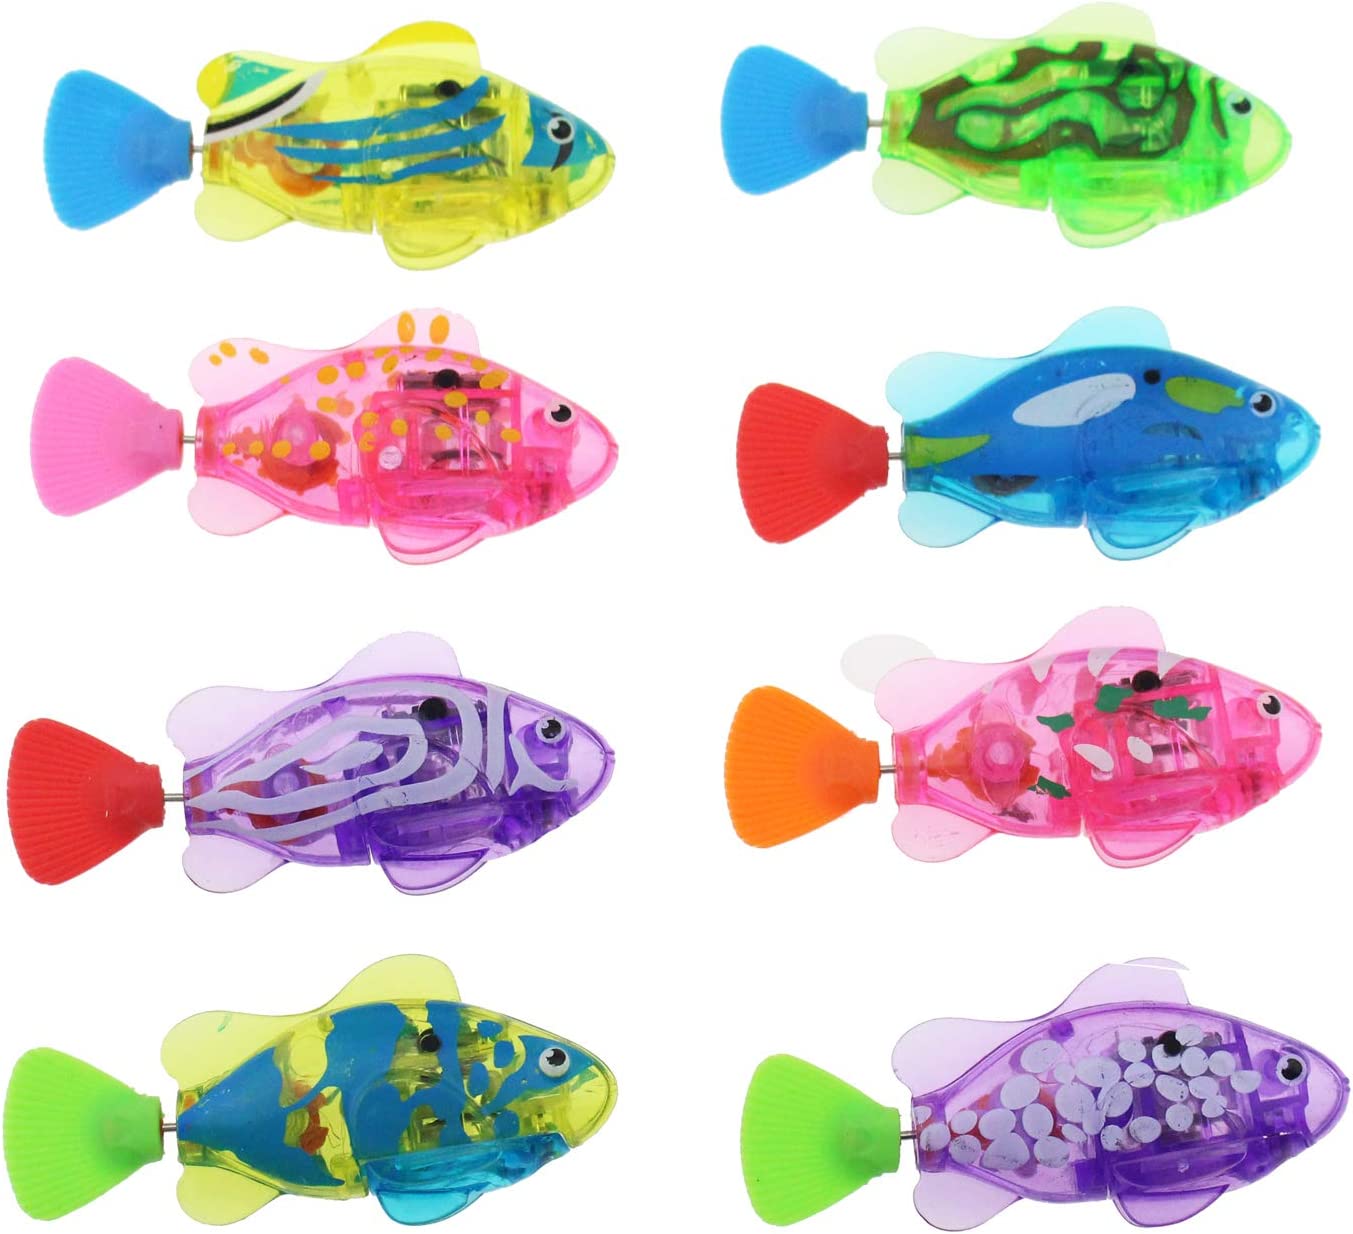 Fish Toy 赤ちゃん幼児風呂のおもちゃ電気魚金魚点滅ライトで泳ぐ水槽 バスタブ 子供用ギフト - 8パック